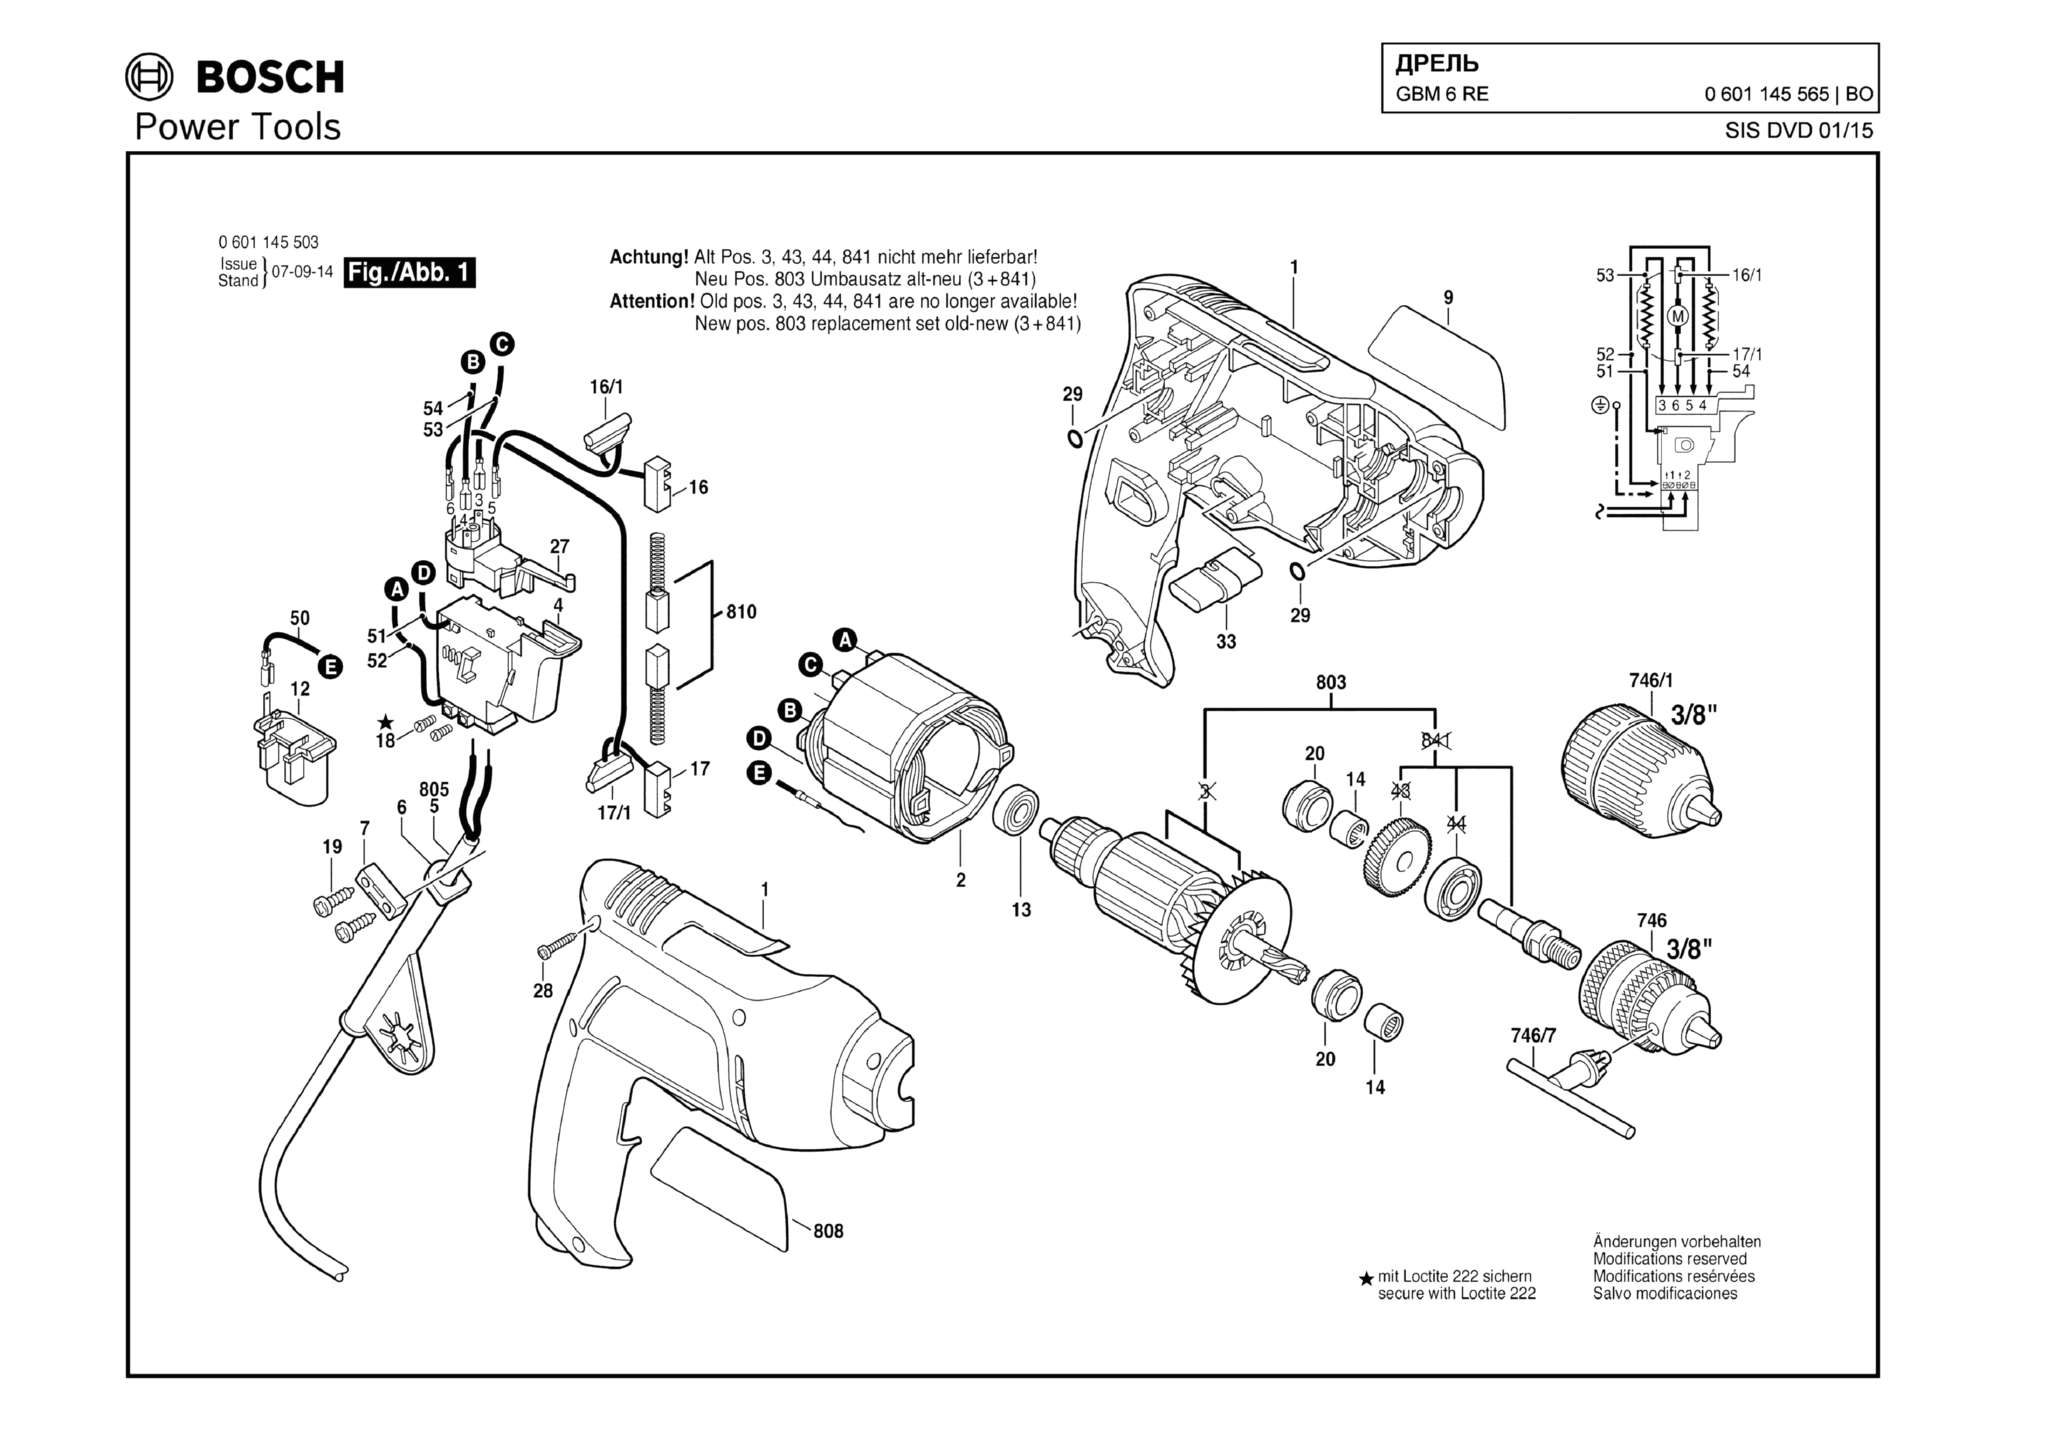 Запчасти, схема и деталировка Bosch GBM 6 RE (ТИП 0601145565)